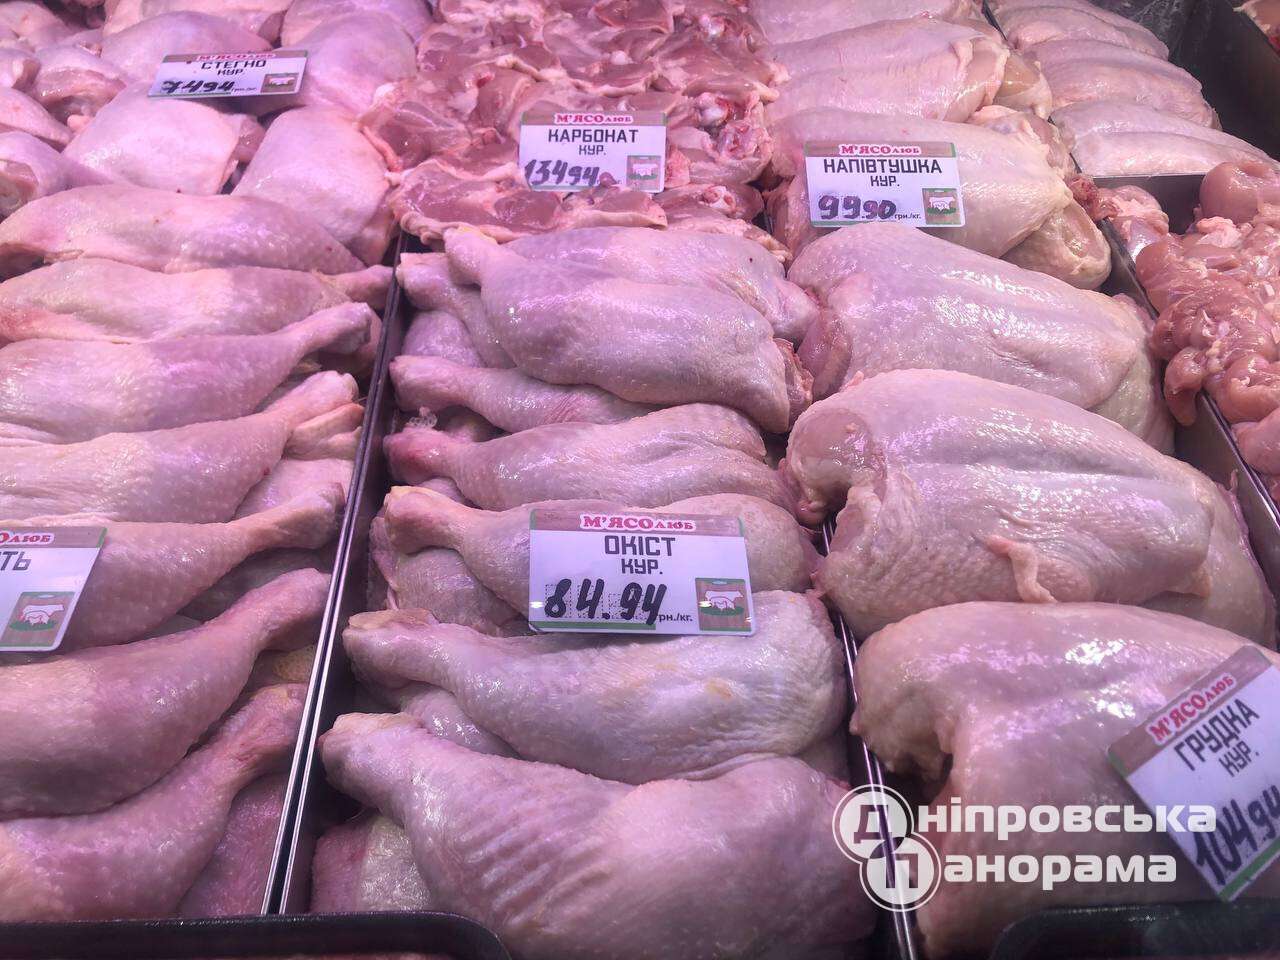 цены на мясо Днепр